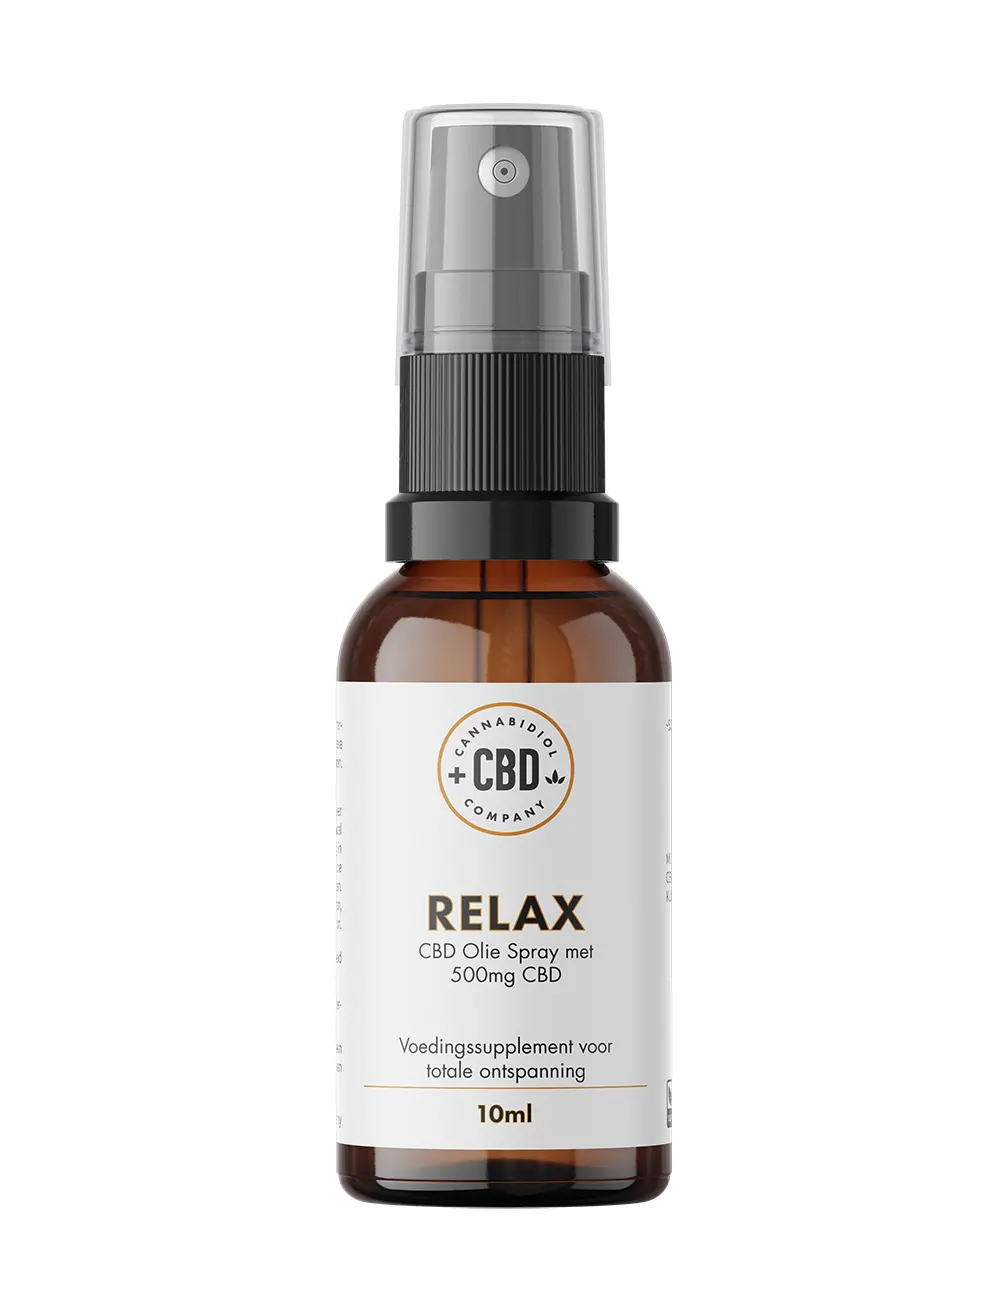 Relax CBD Spray, cbd supplement voor ontspanning